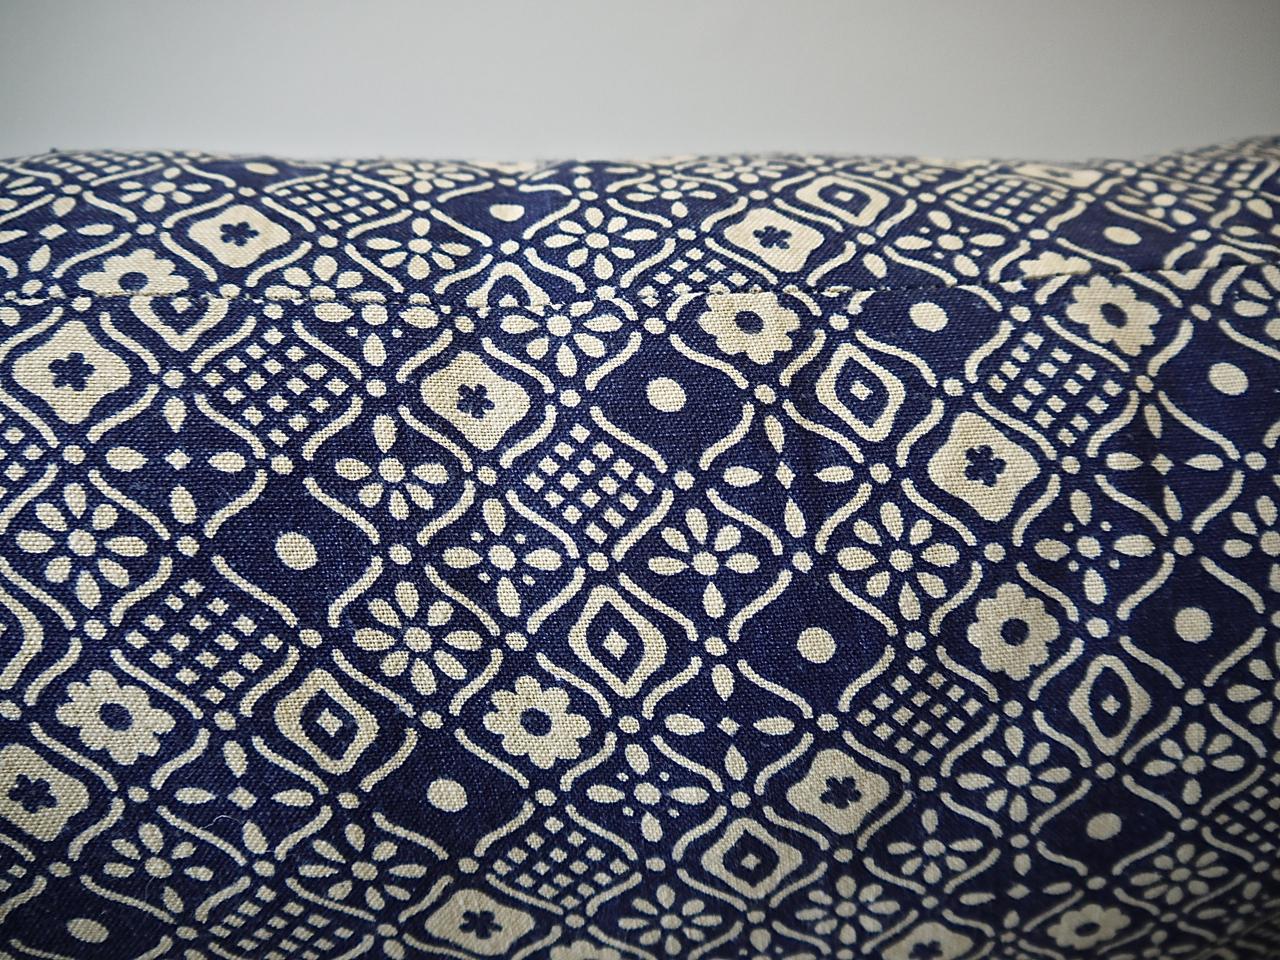 Indigo Blue and White Print Cotton Pillow French, Midcentury 1